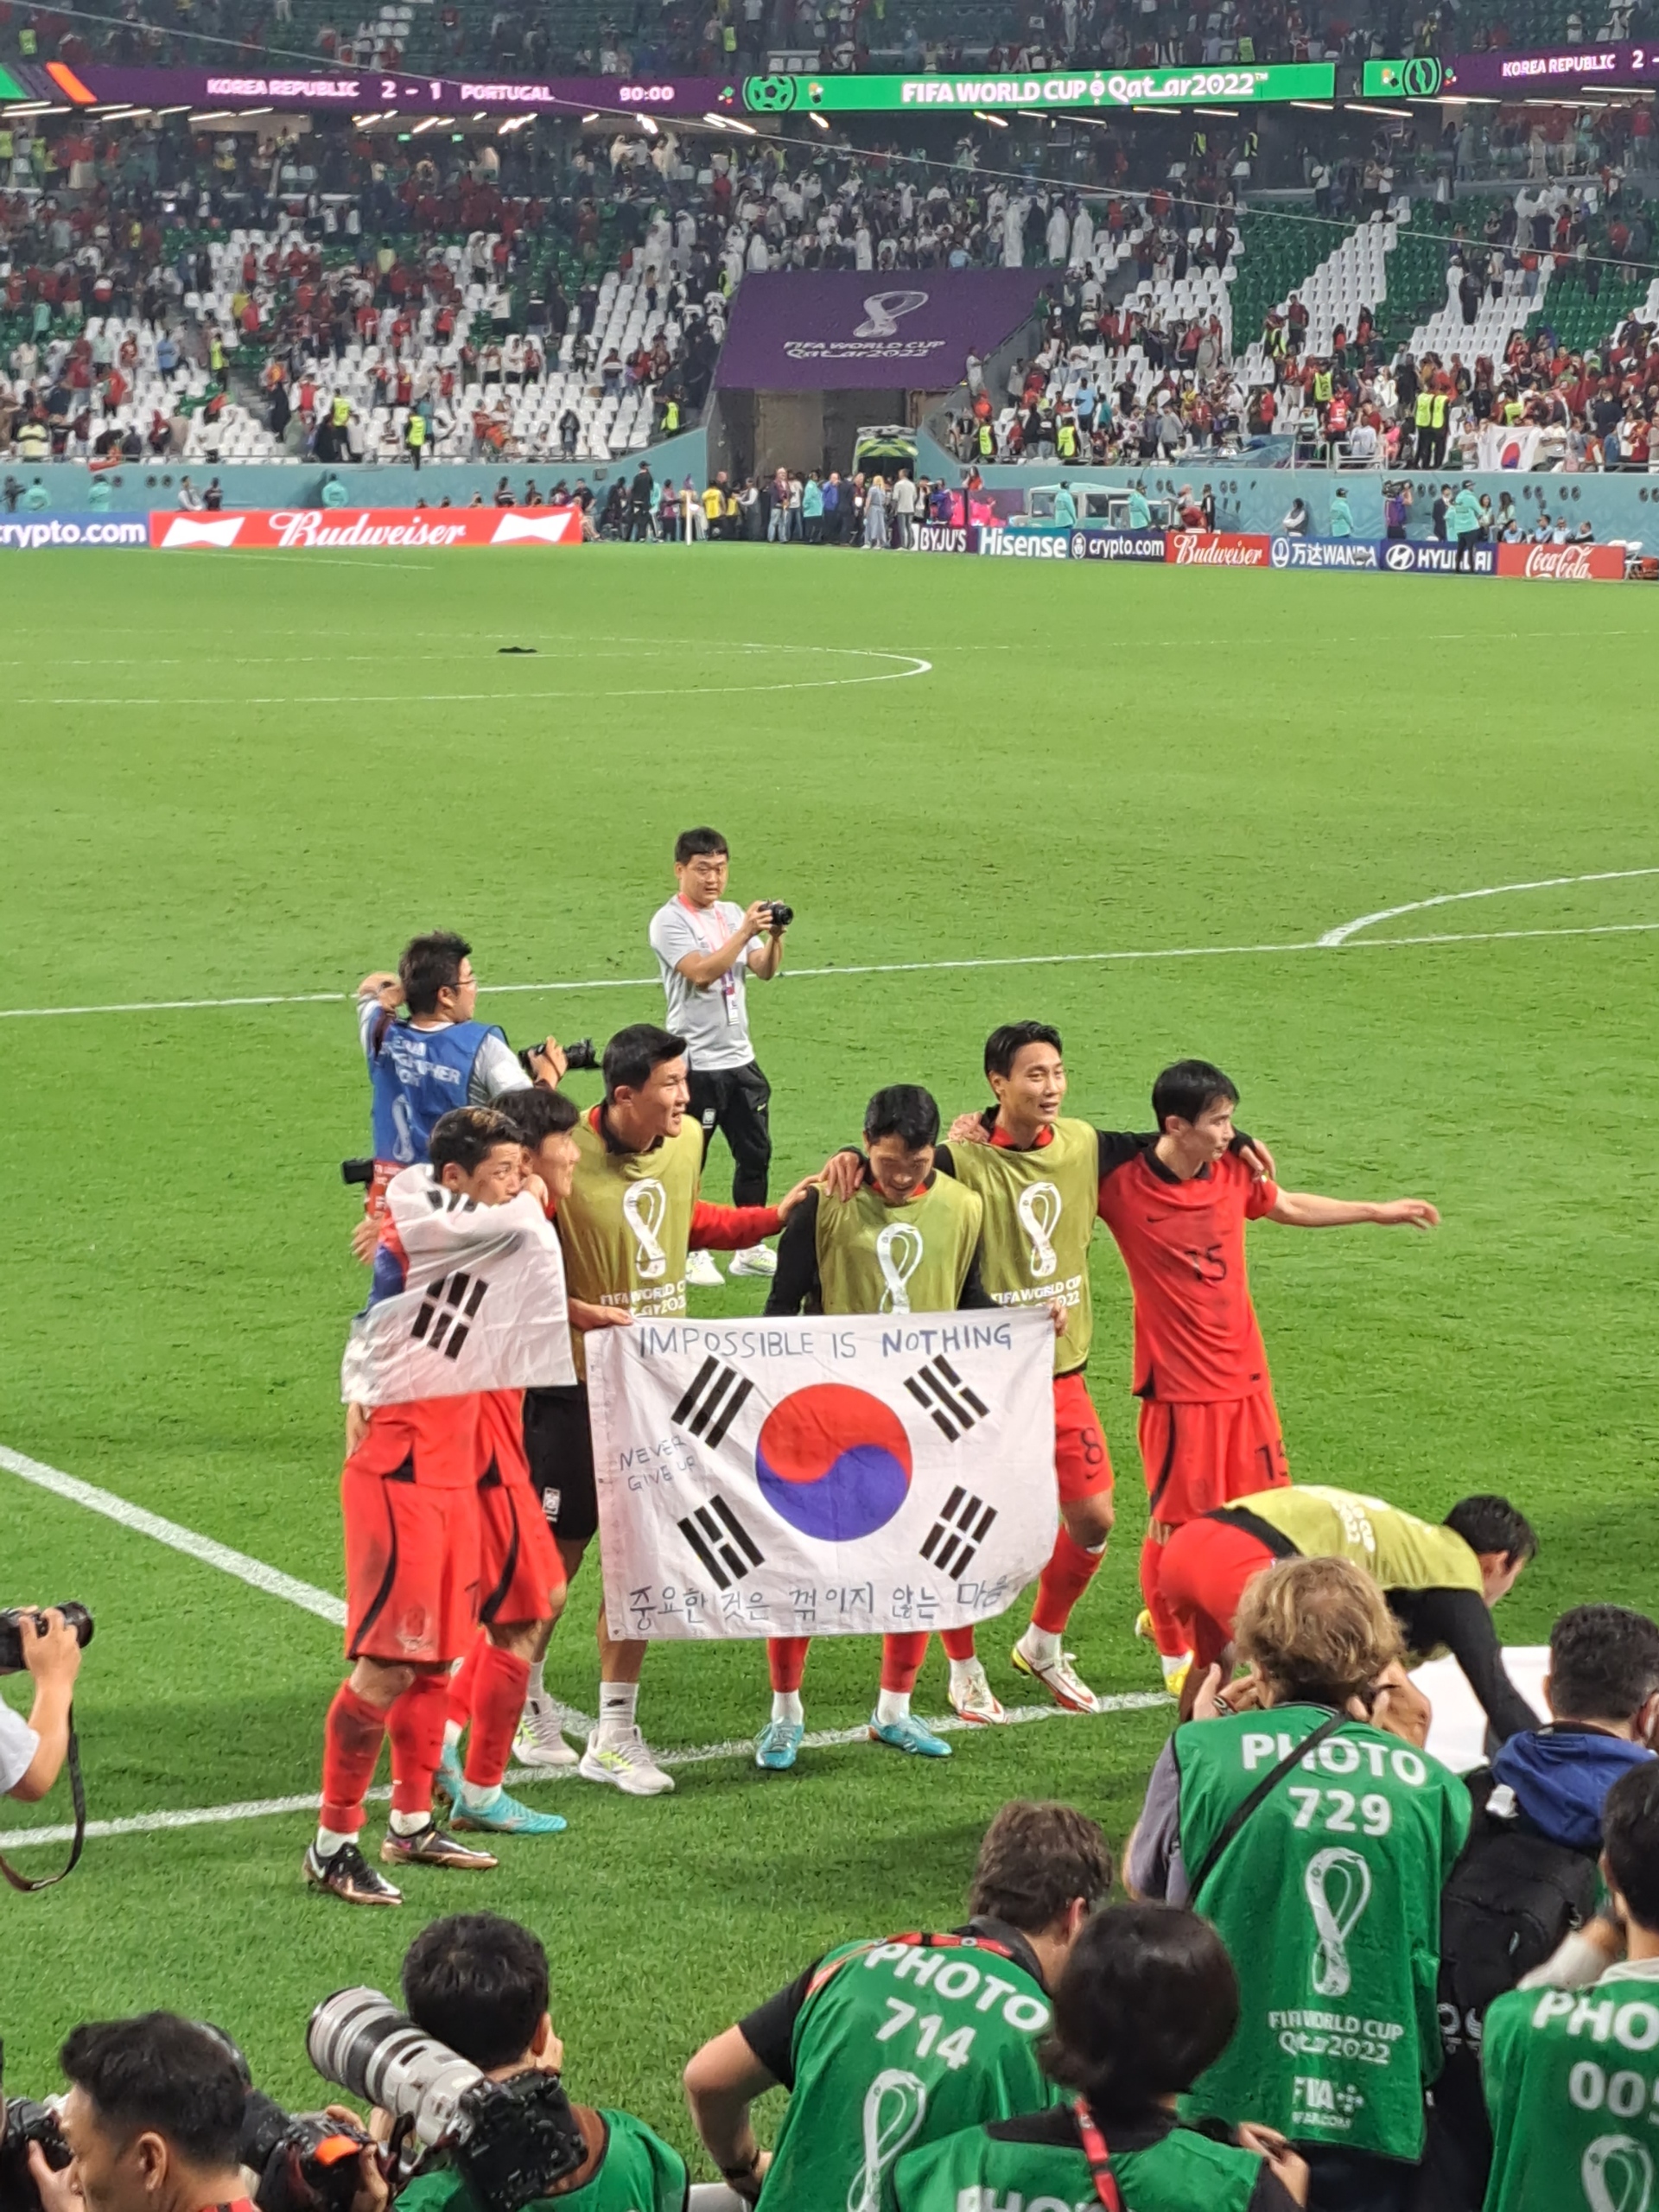 ‘중꺾마 태극기’를 선수들이 들면서 인터넷에 떠돌던 ‘중요한 것은 꺾이지 않는 마음’은 이번 월드컵을 상징하는 문구가 됐다. 김의민씨 제공